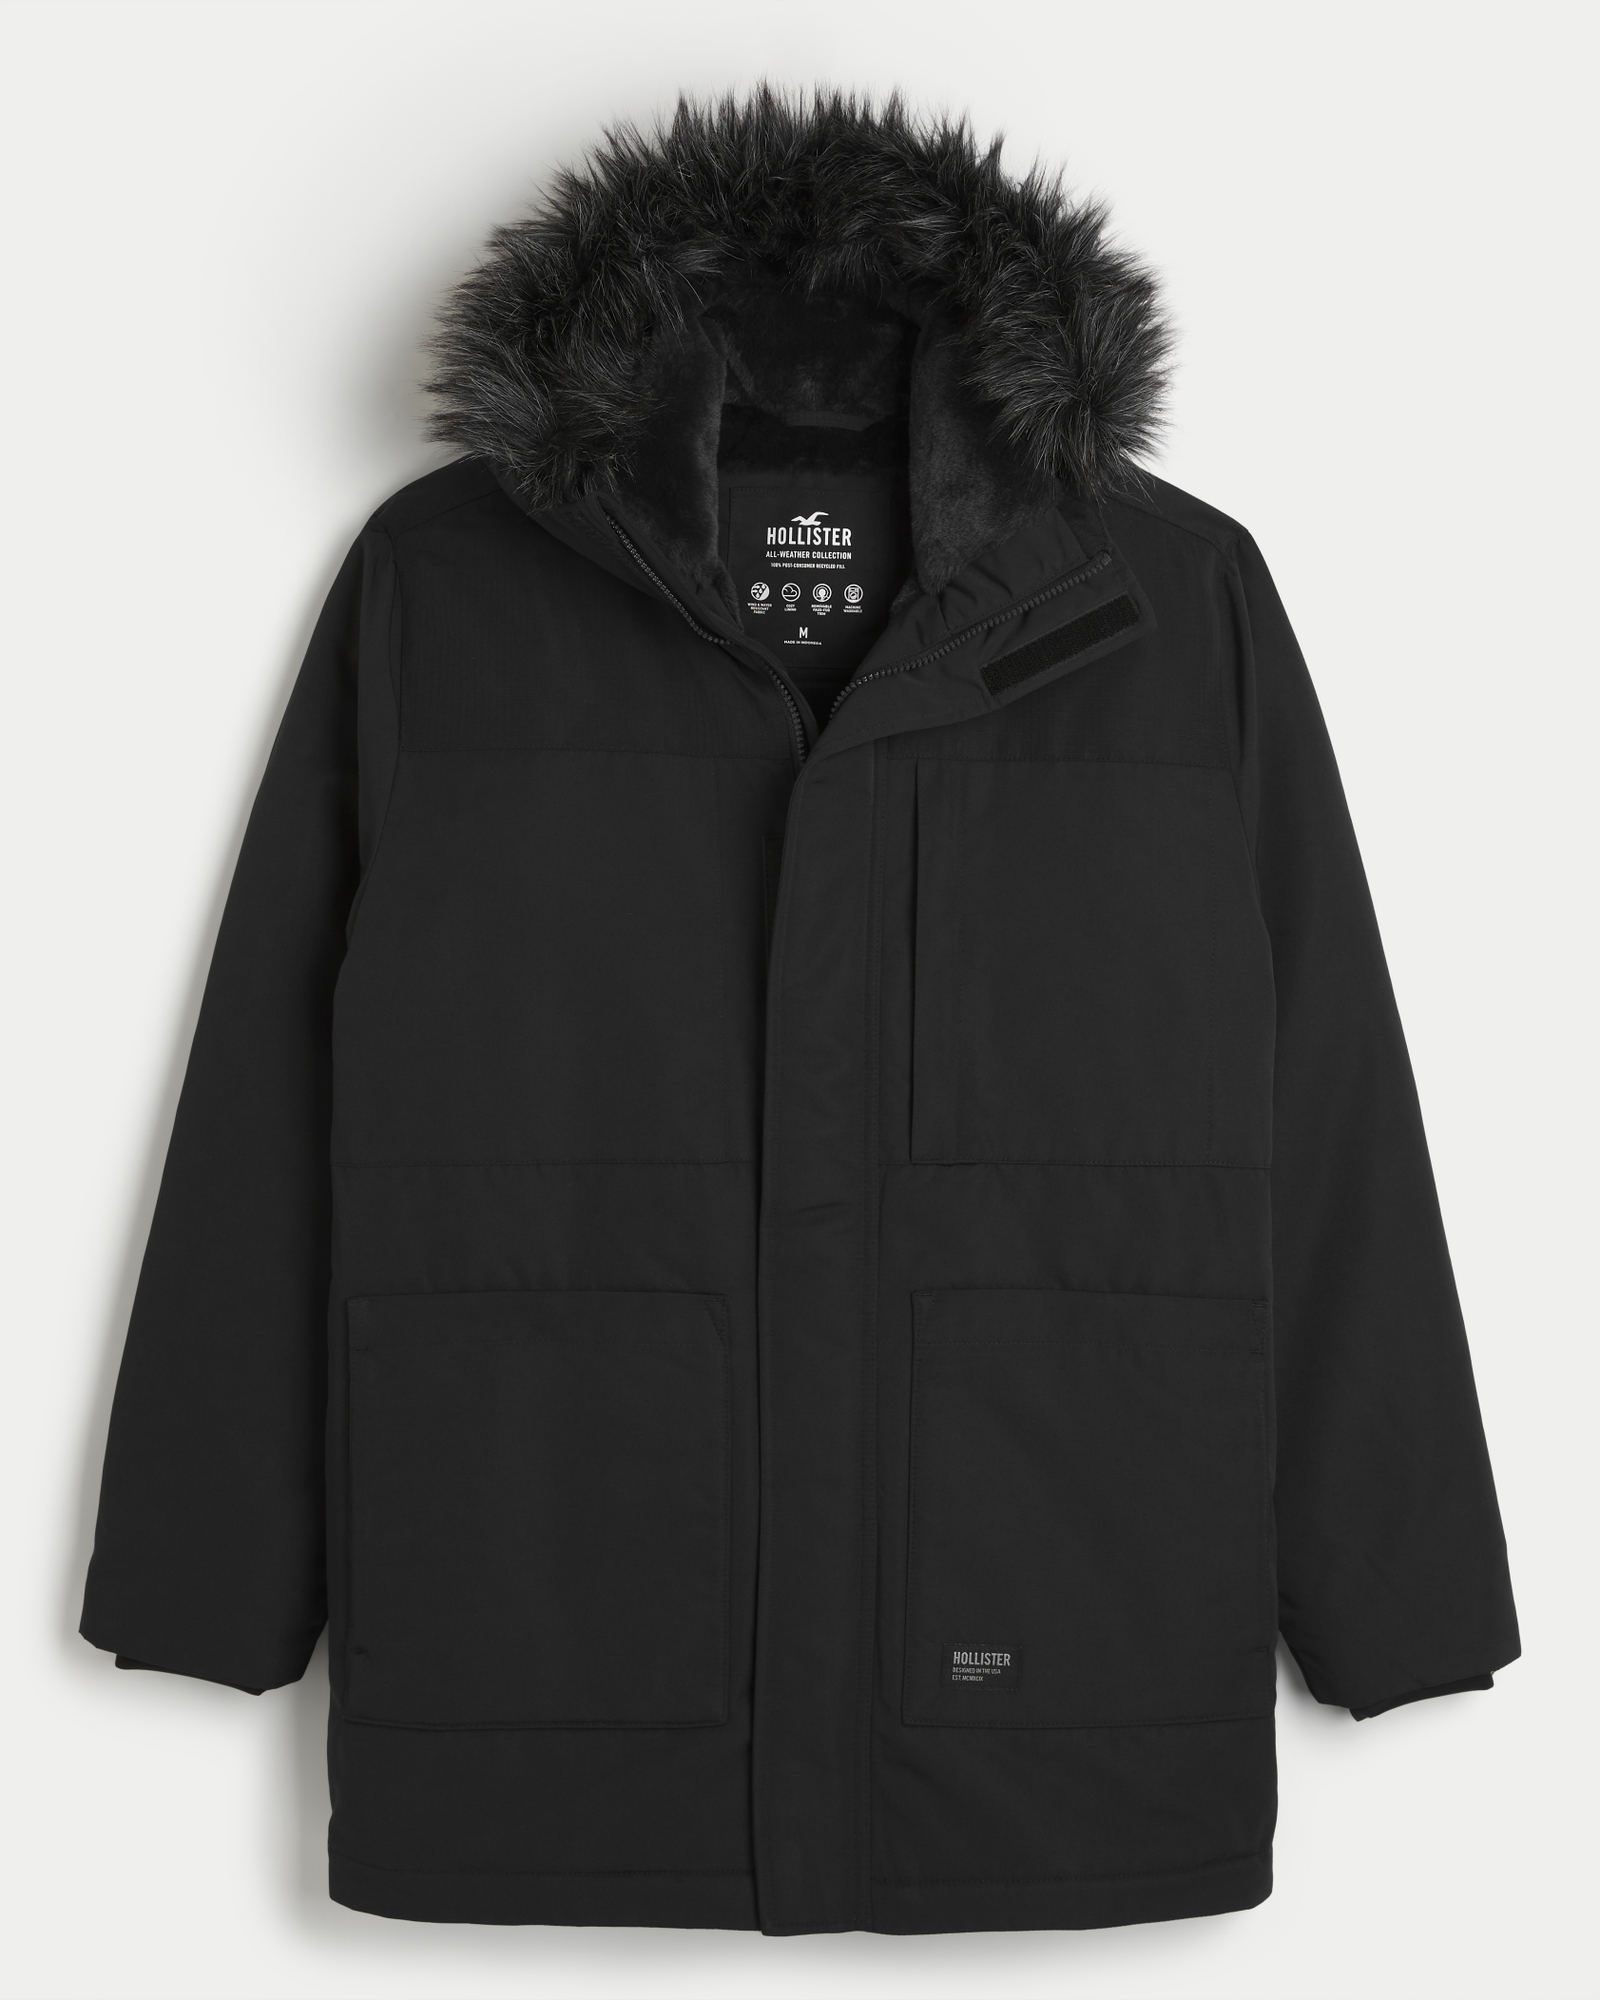 Hollister Faux Fur Lined Hooded Parka Coat in Black for Men